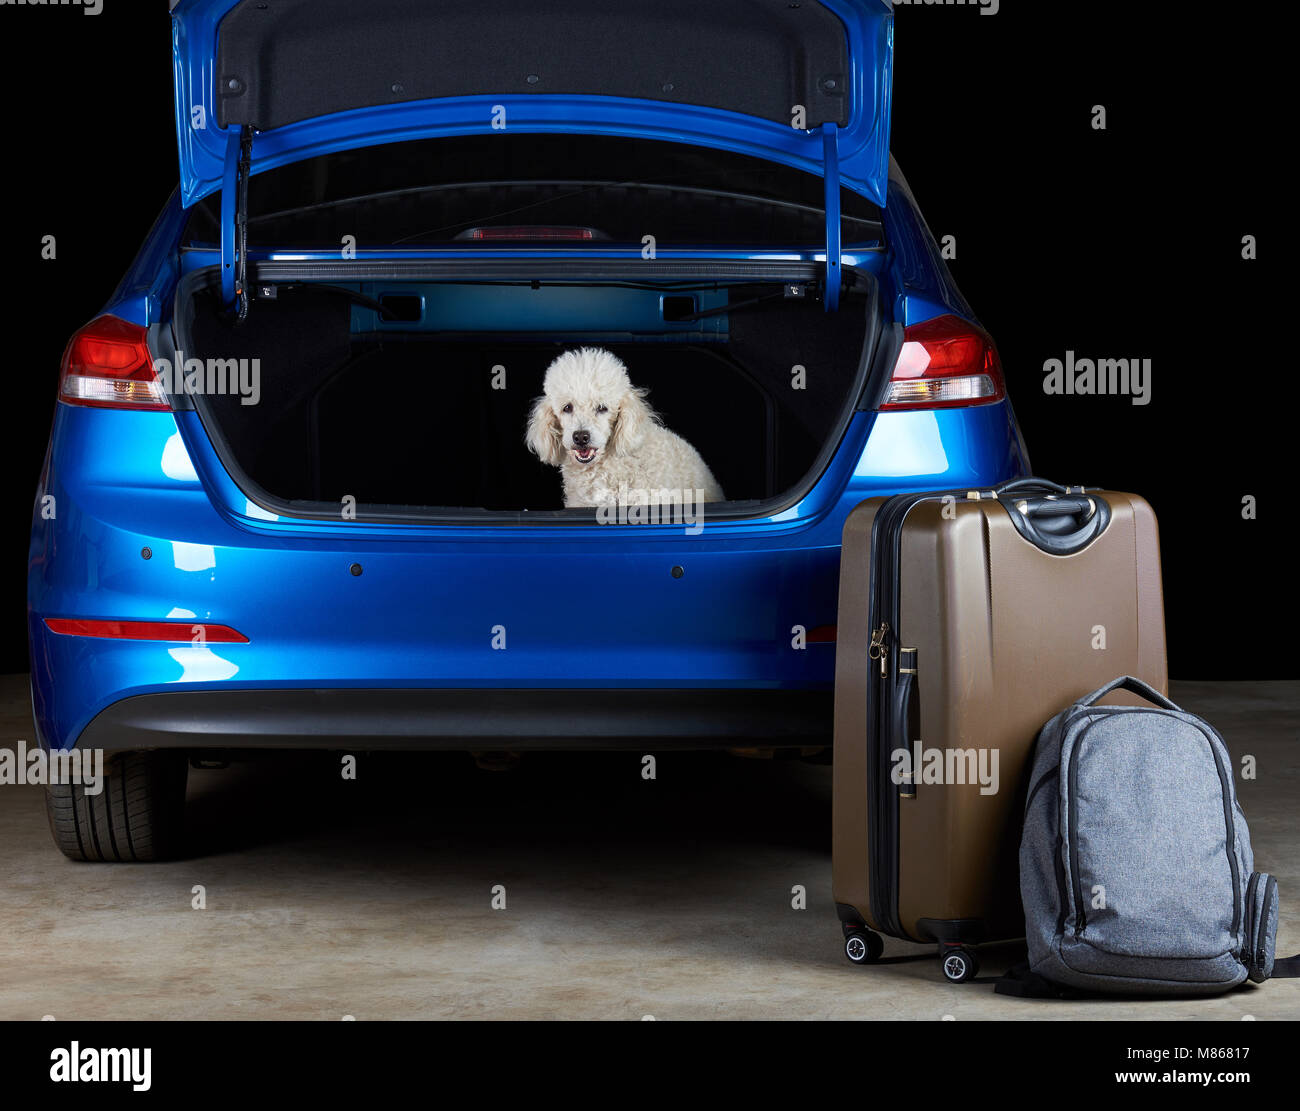 Weißer Pudel Hund im Kofferraum eines modernen blau Limousine Auto sitzen  Stockfotografie - Alamy